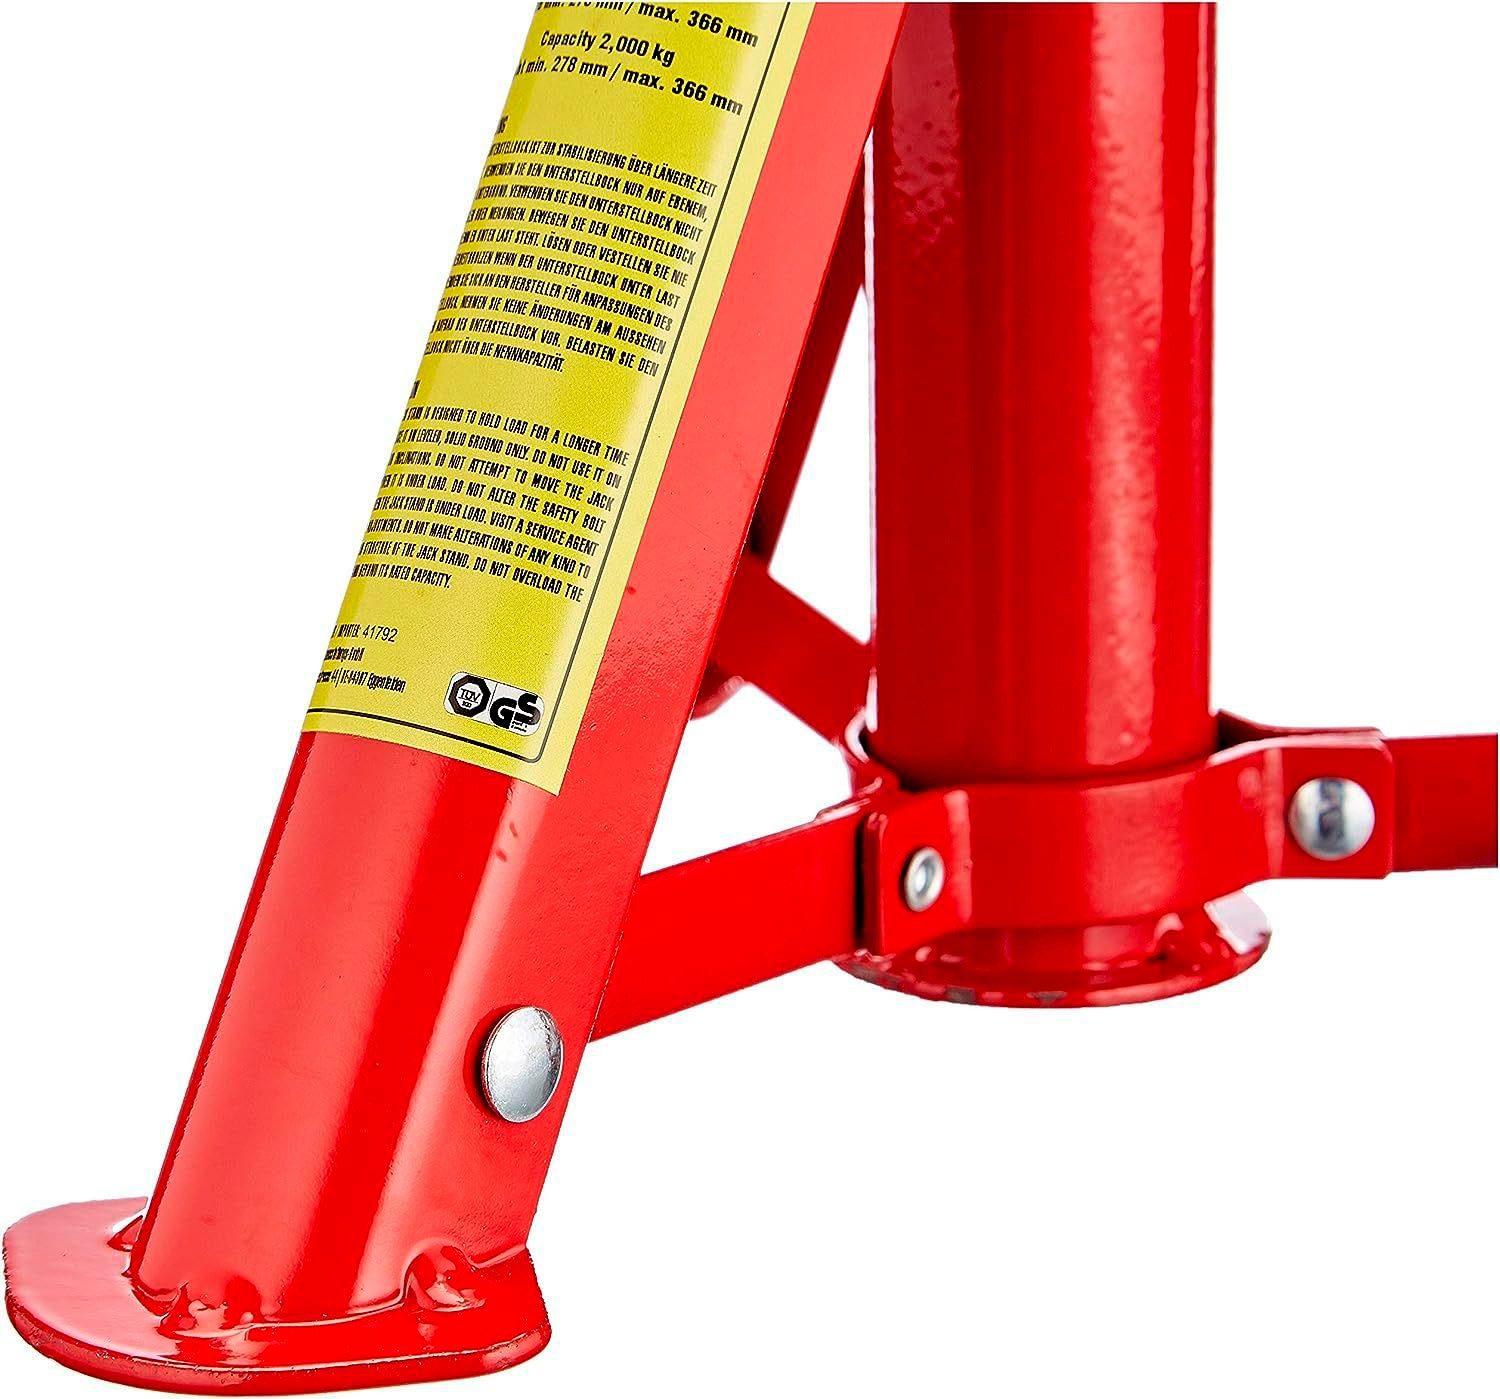 Petex Unterstellbock mit rot Tragkraft: Sicherungssplint, 2 höhenverstellbar faltbar, 2er Tonnen, und Set